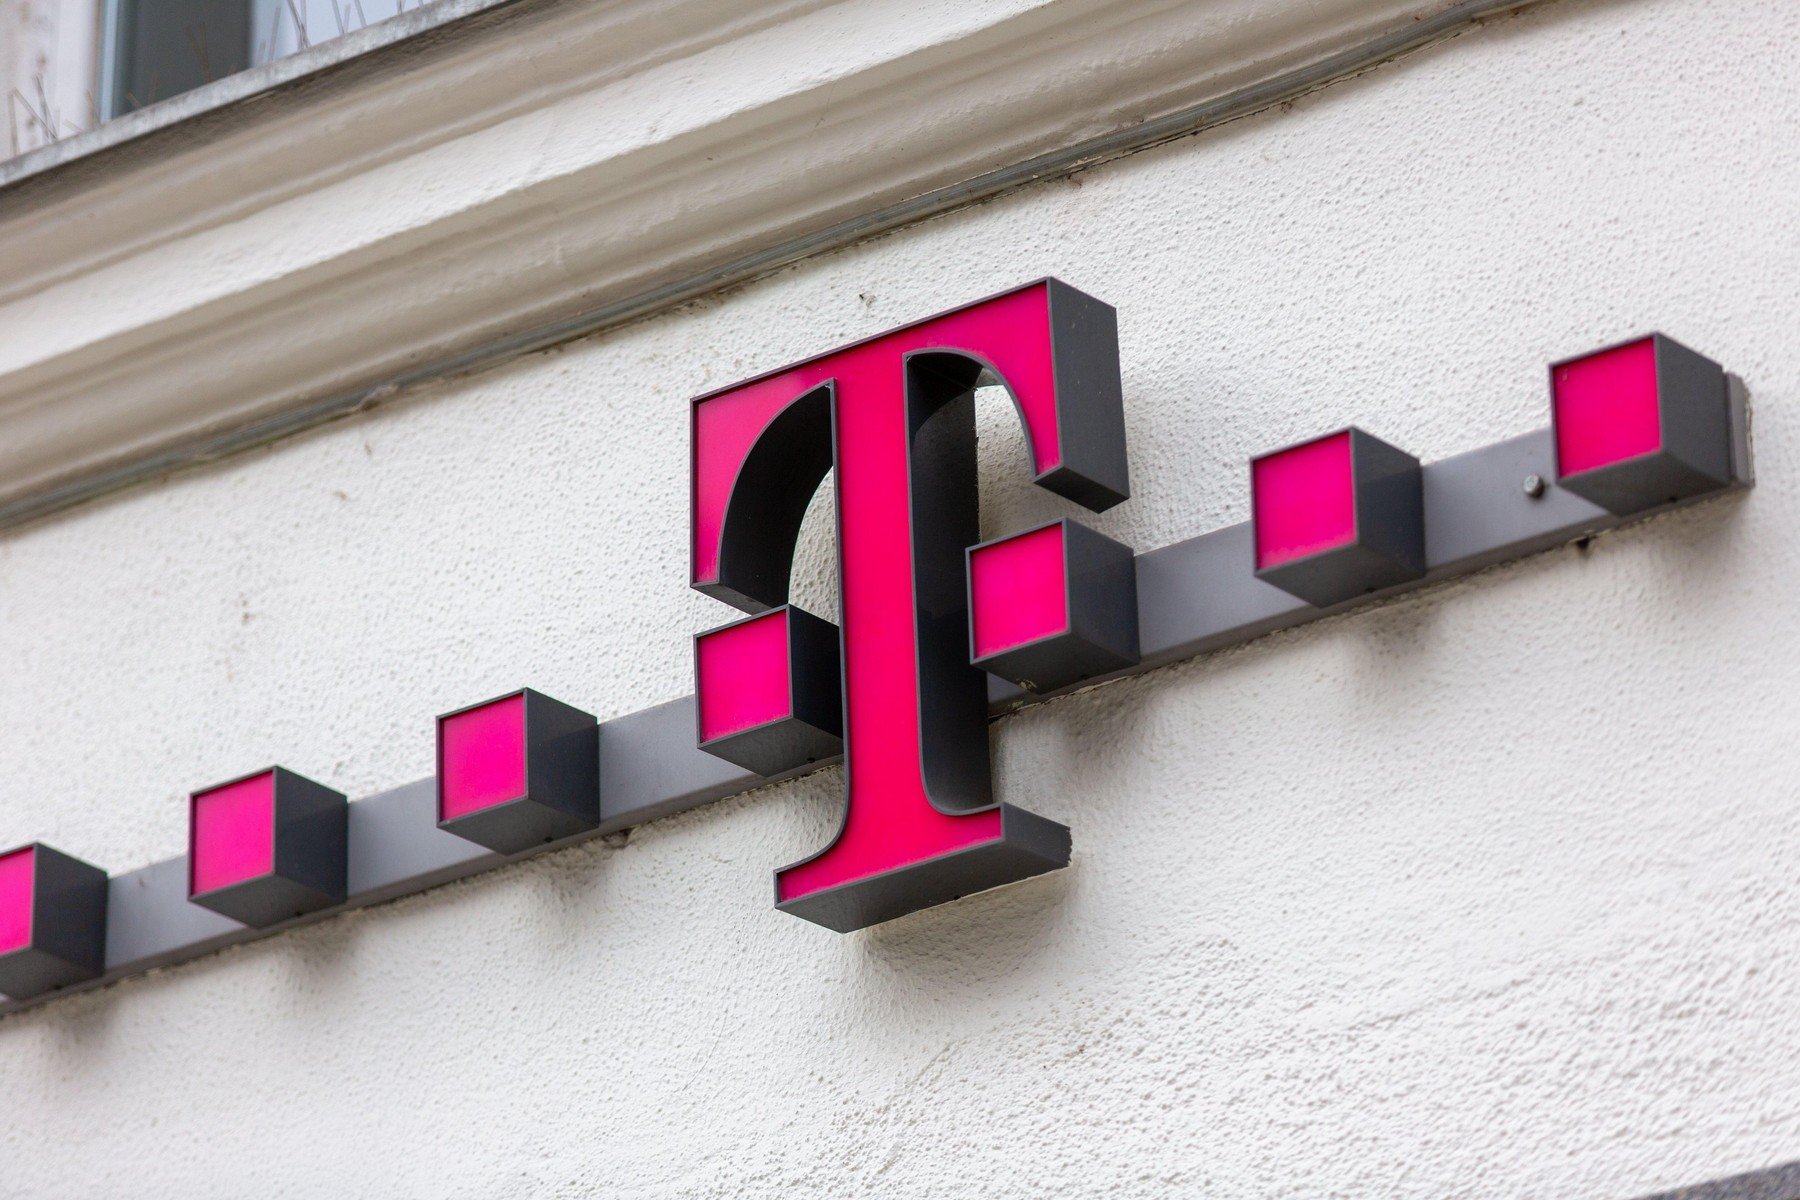 Kibabrált a Telekom az saját ügyfeleivel, legyünk résen az ilyen SMS-ekkel 